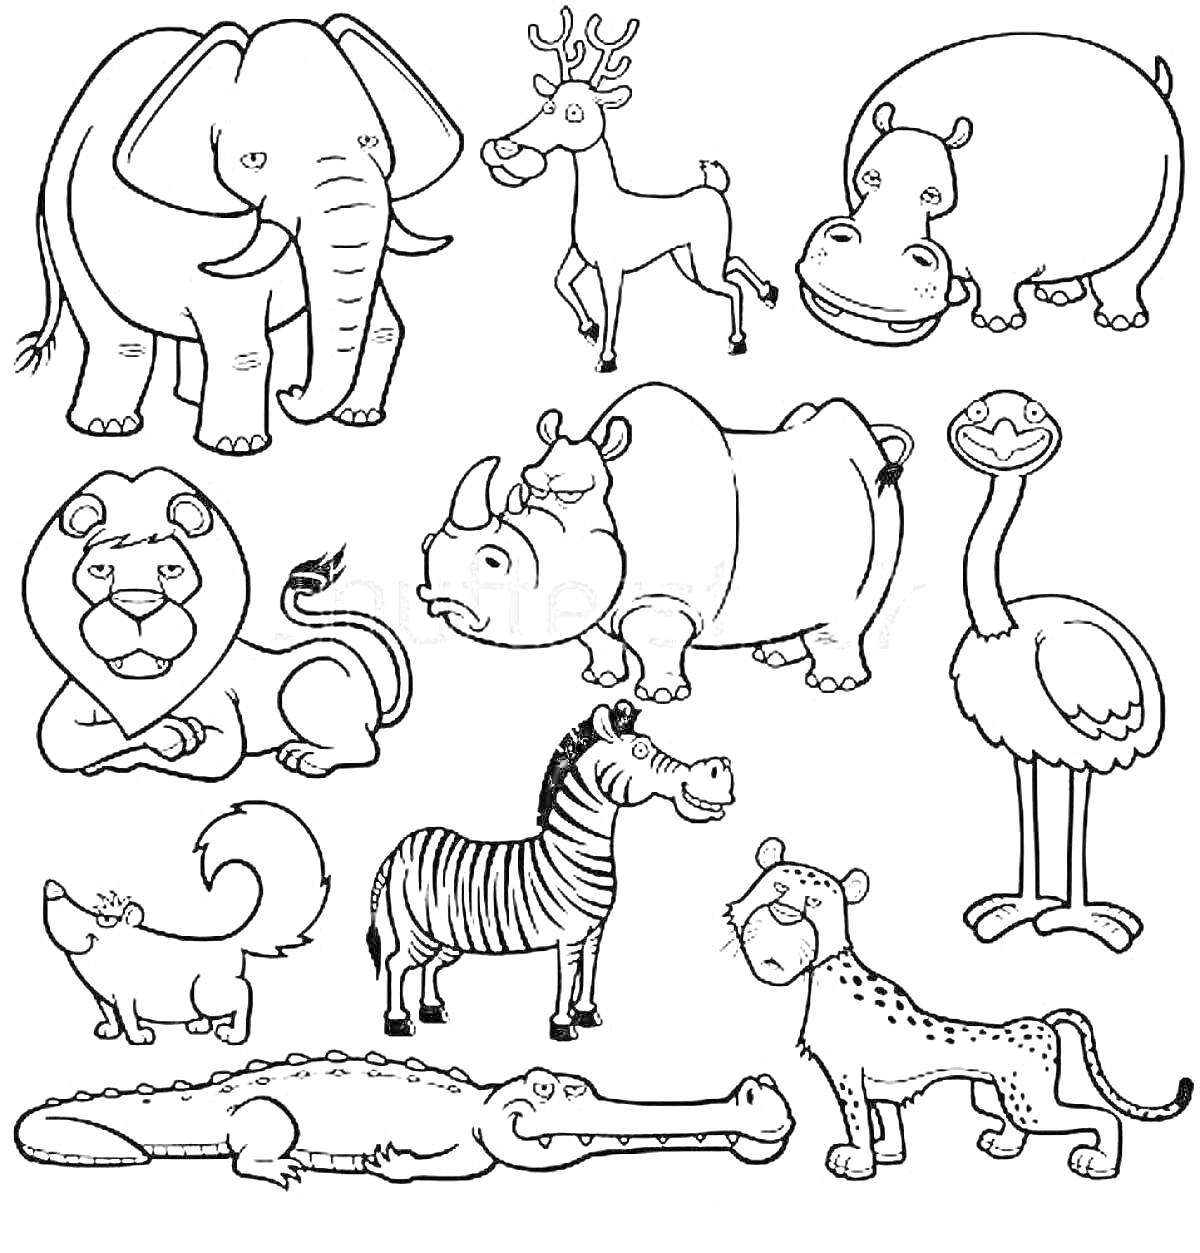 Раскраска Раскраска с изображением животных: слон, олень, бегемот, лев, носорог, страус, лиса, зебра, крокодил, гепард